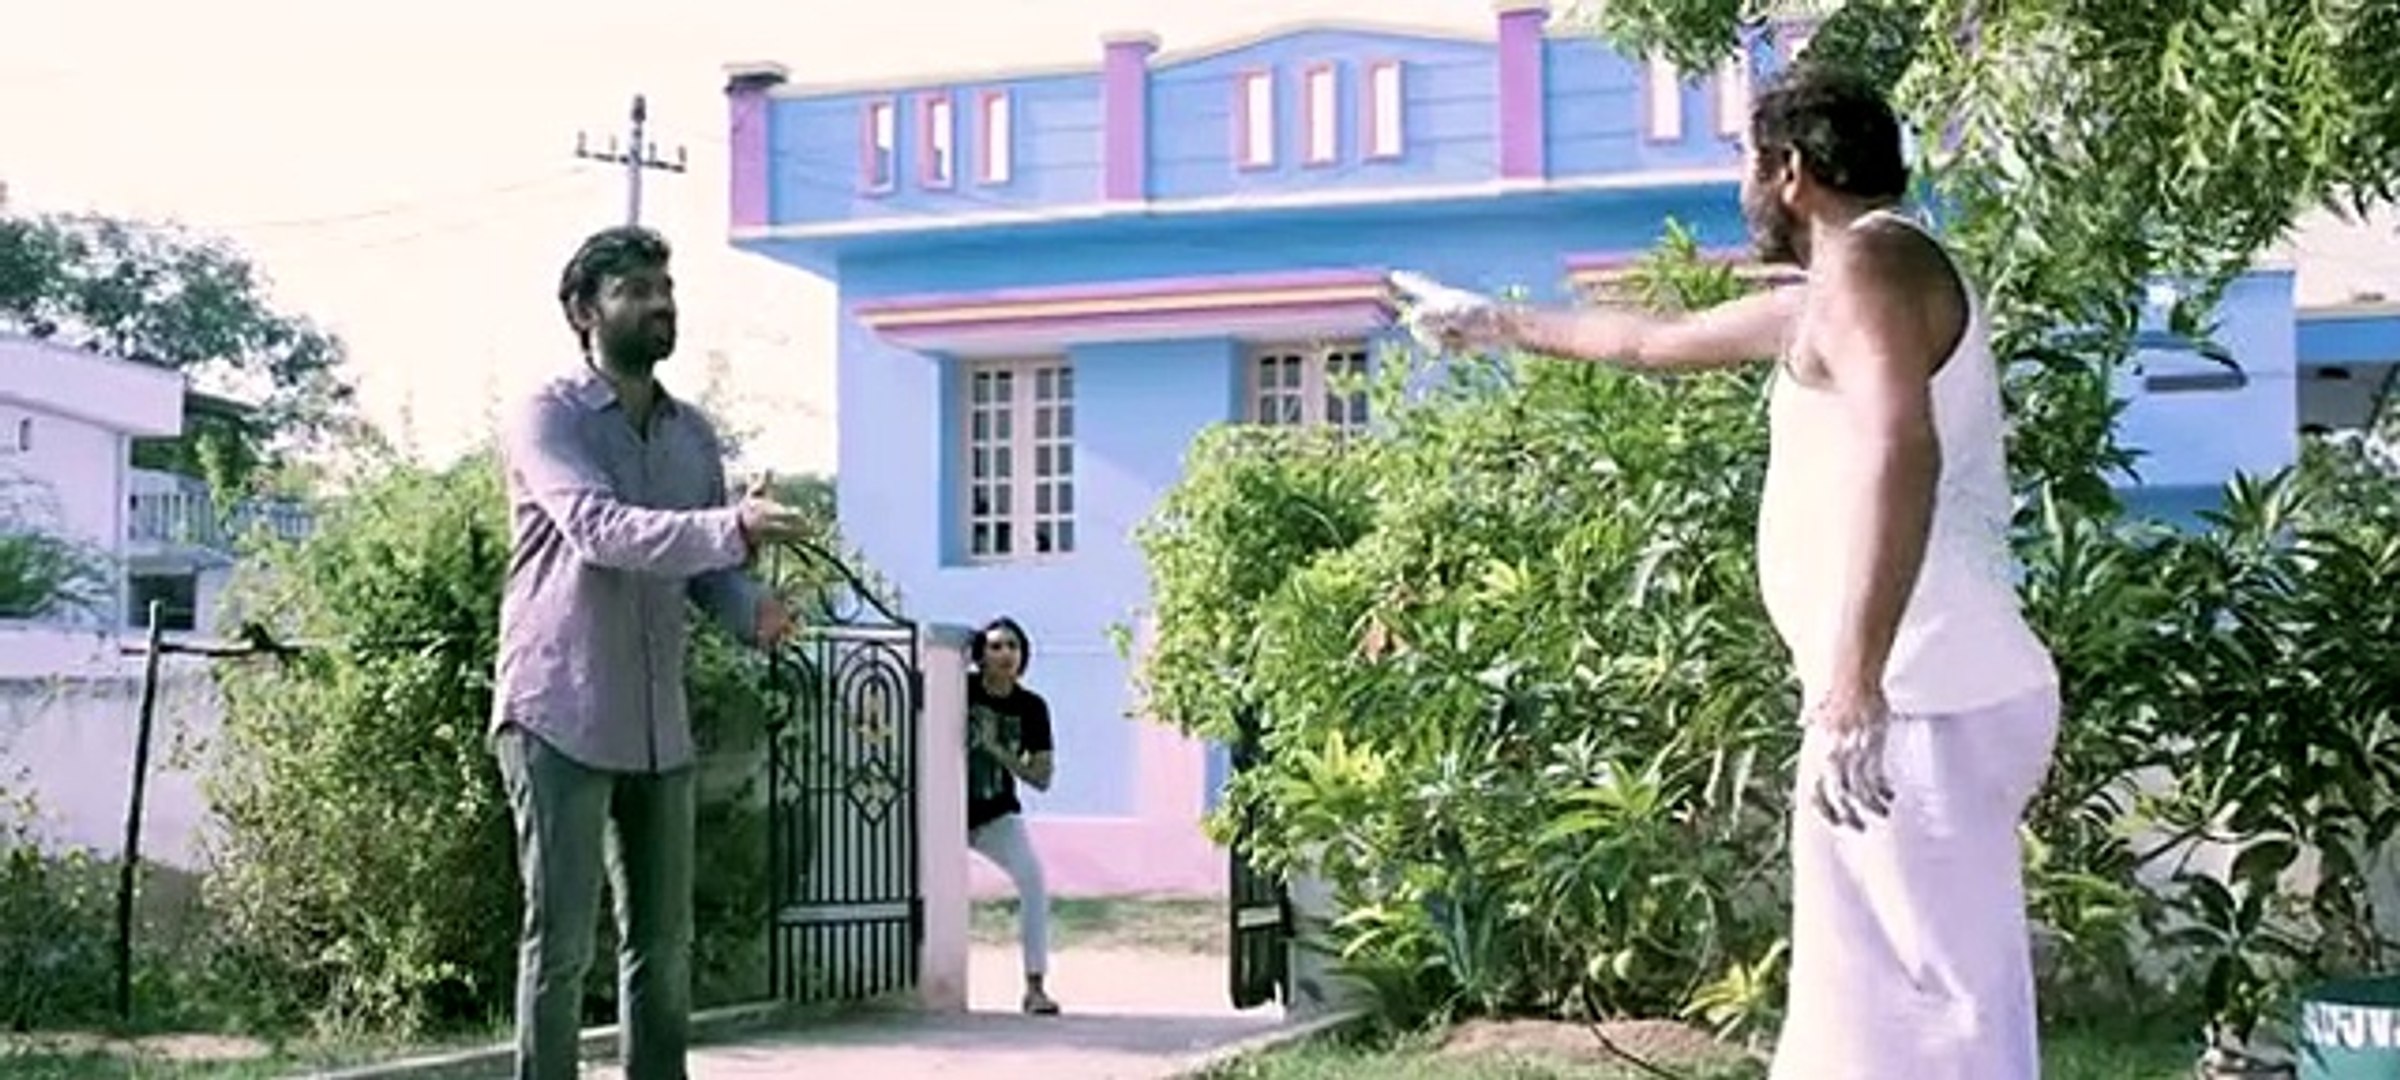 Yedu Chepala Katha Telugu Movie Part 2 Romantic Psycho Thriller ! - video  Dailymotion